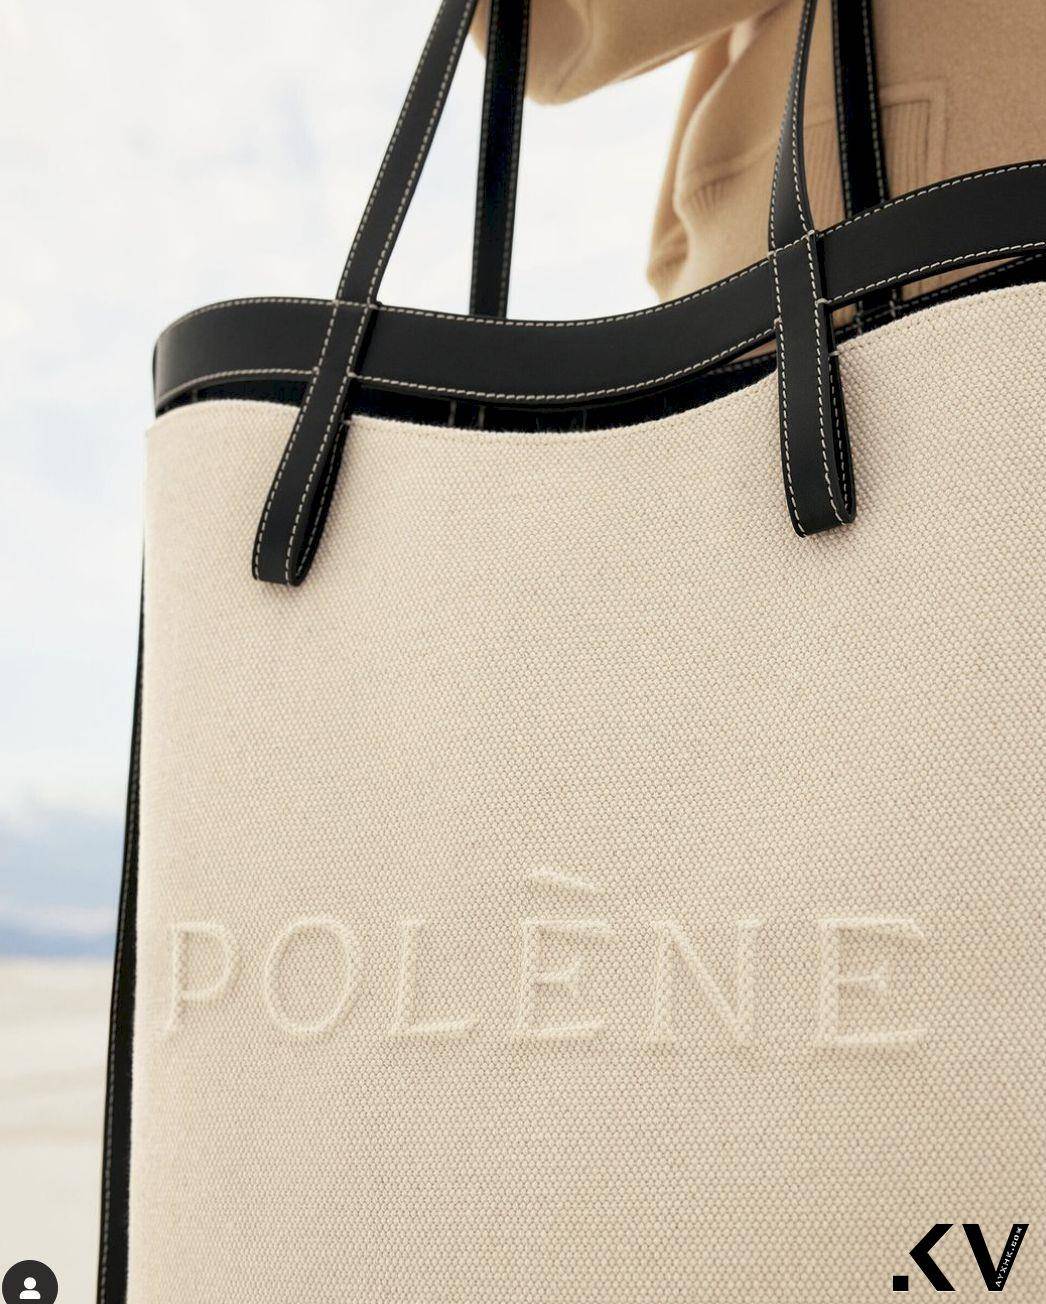 说・流行／法国时髦女生都有一颗Polène Paris　质感不输精品必败包款揭晓 时尚穿搭 图1张